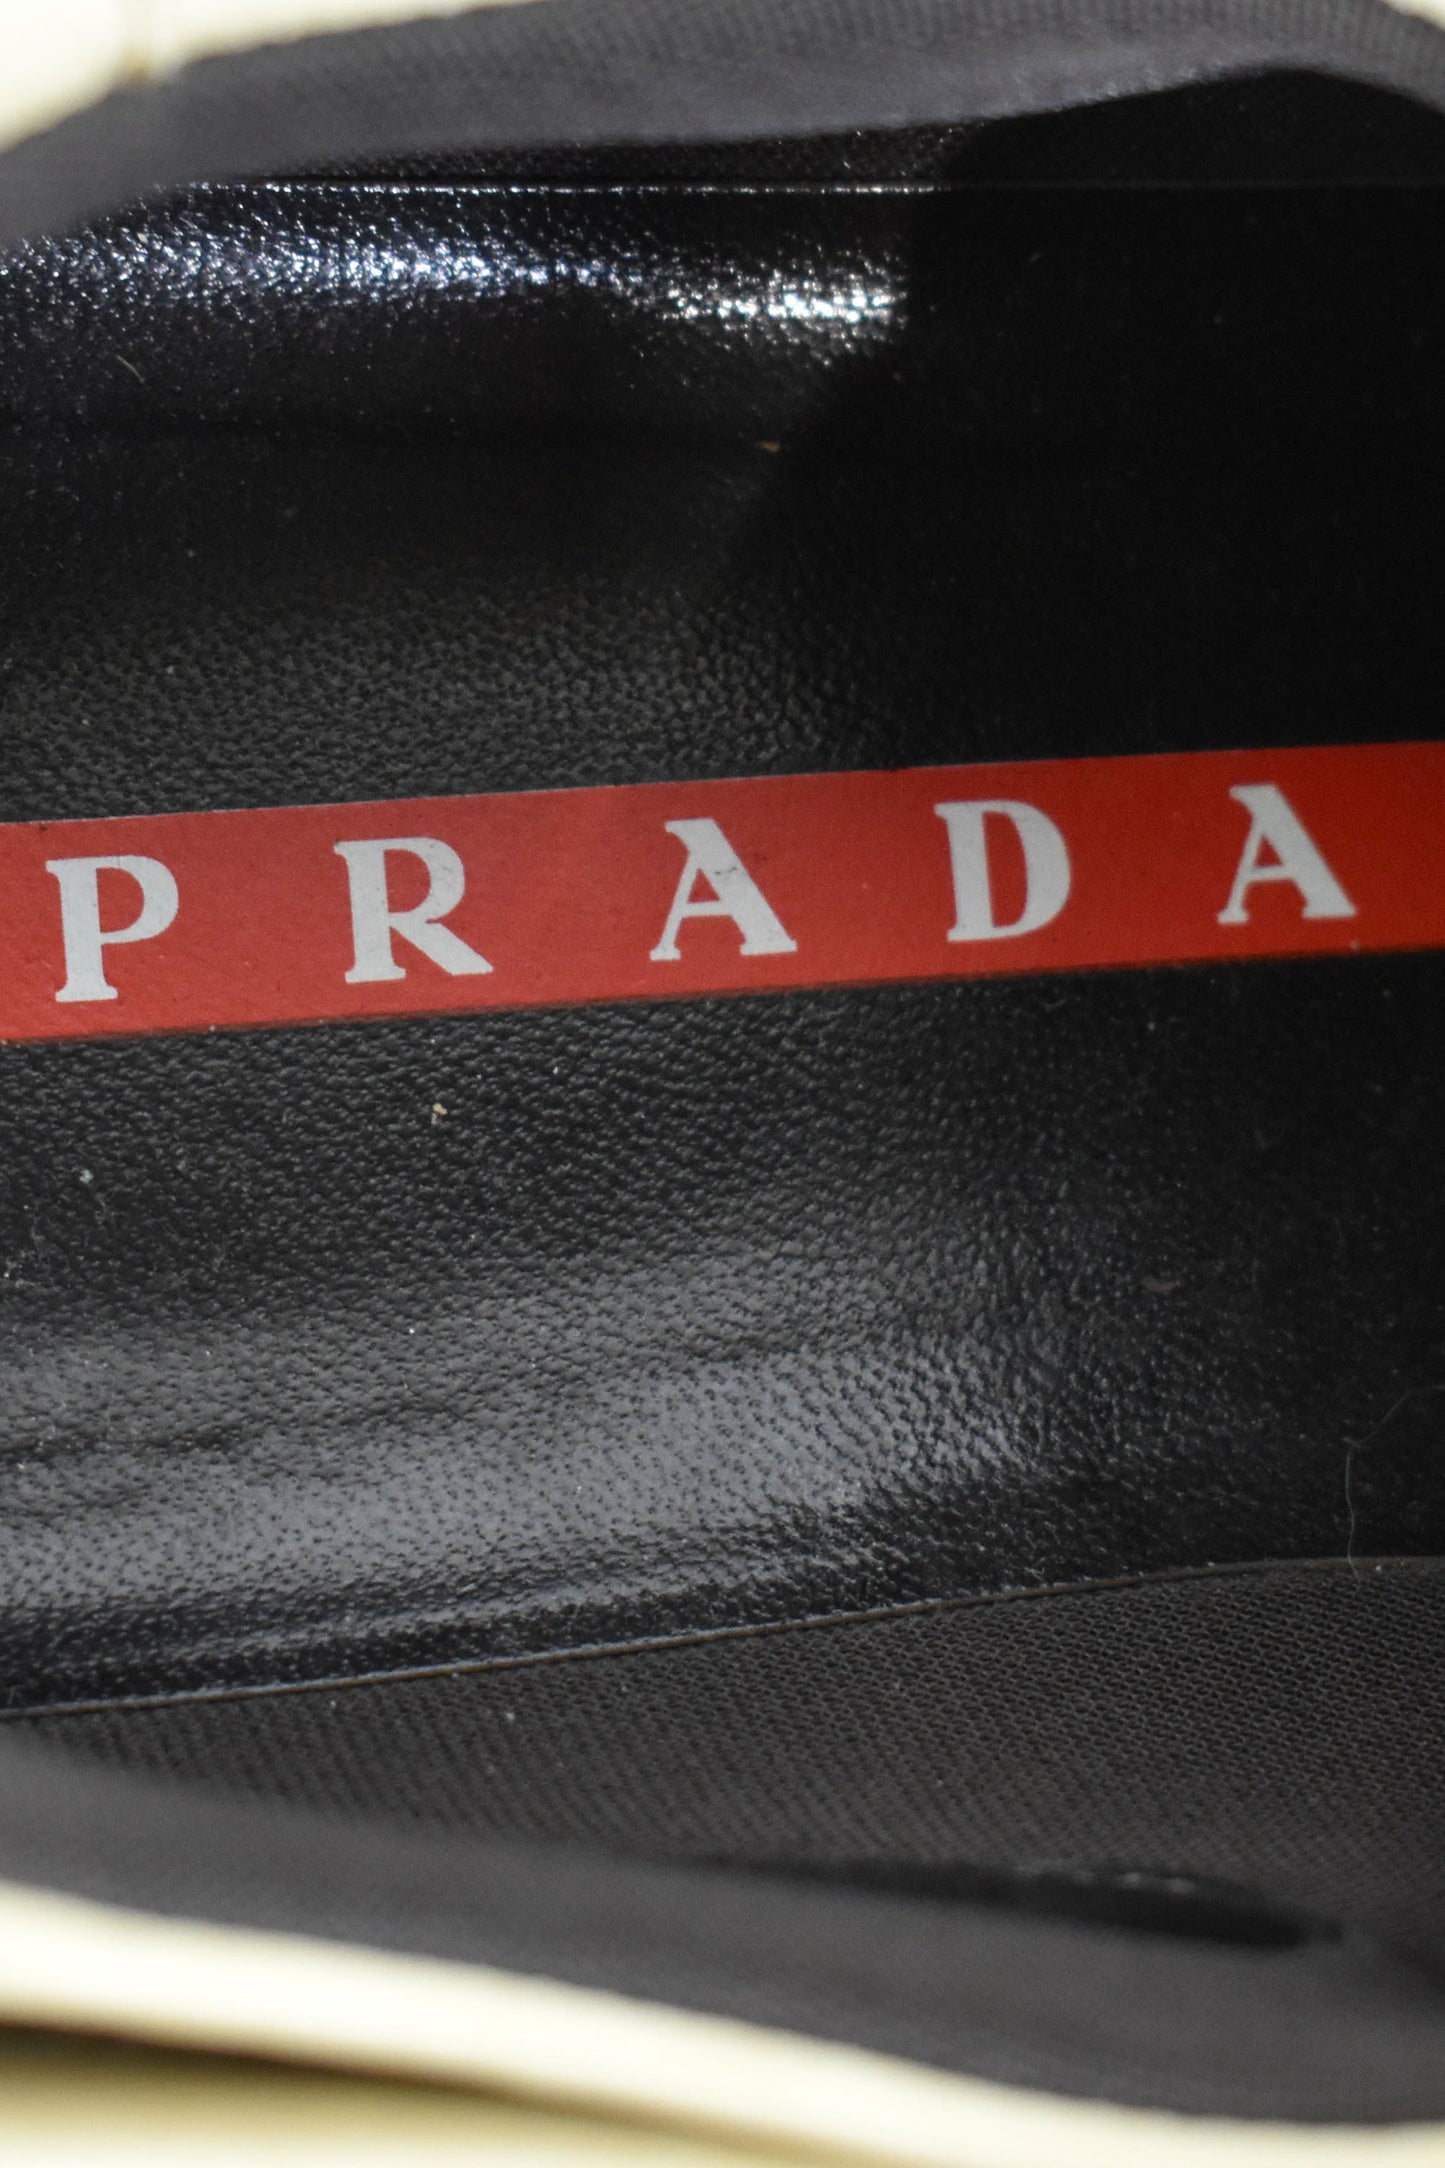 Vintage "Prada" Sneakers